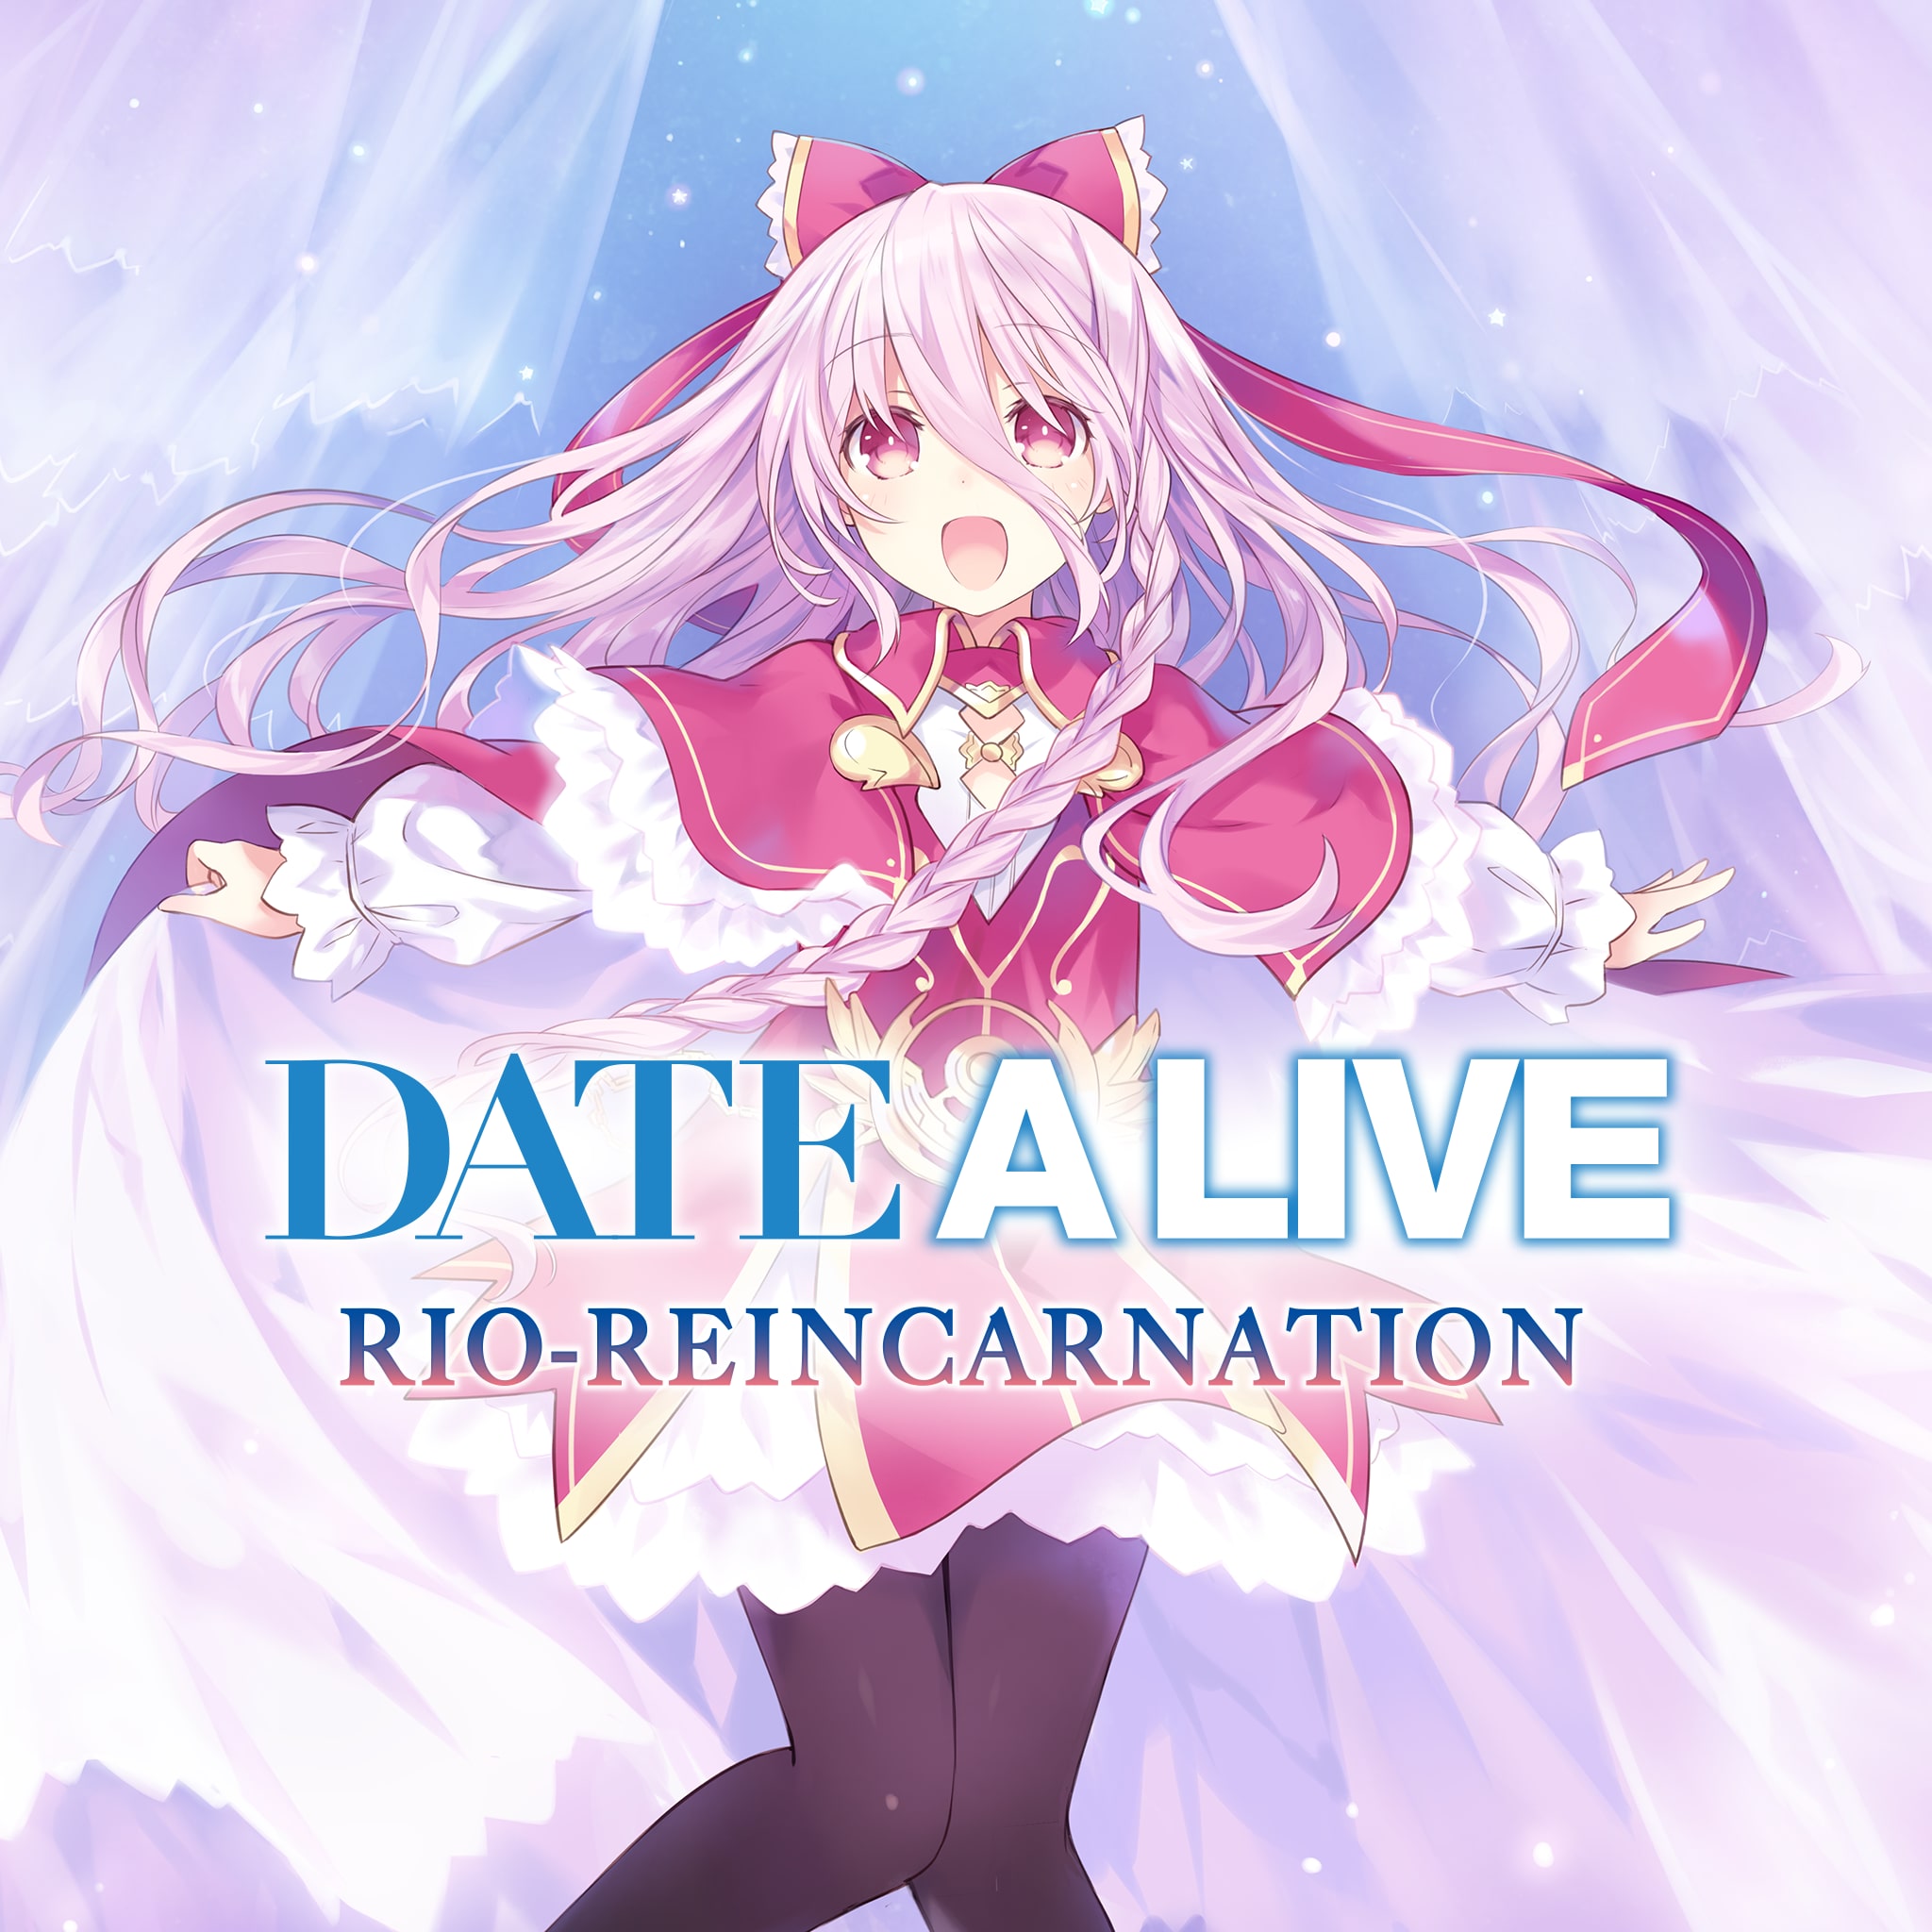 Date A Live: Rio Reincarnation (PC/PS4) será lançado no Ocidente